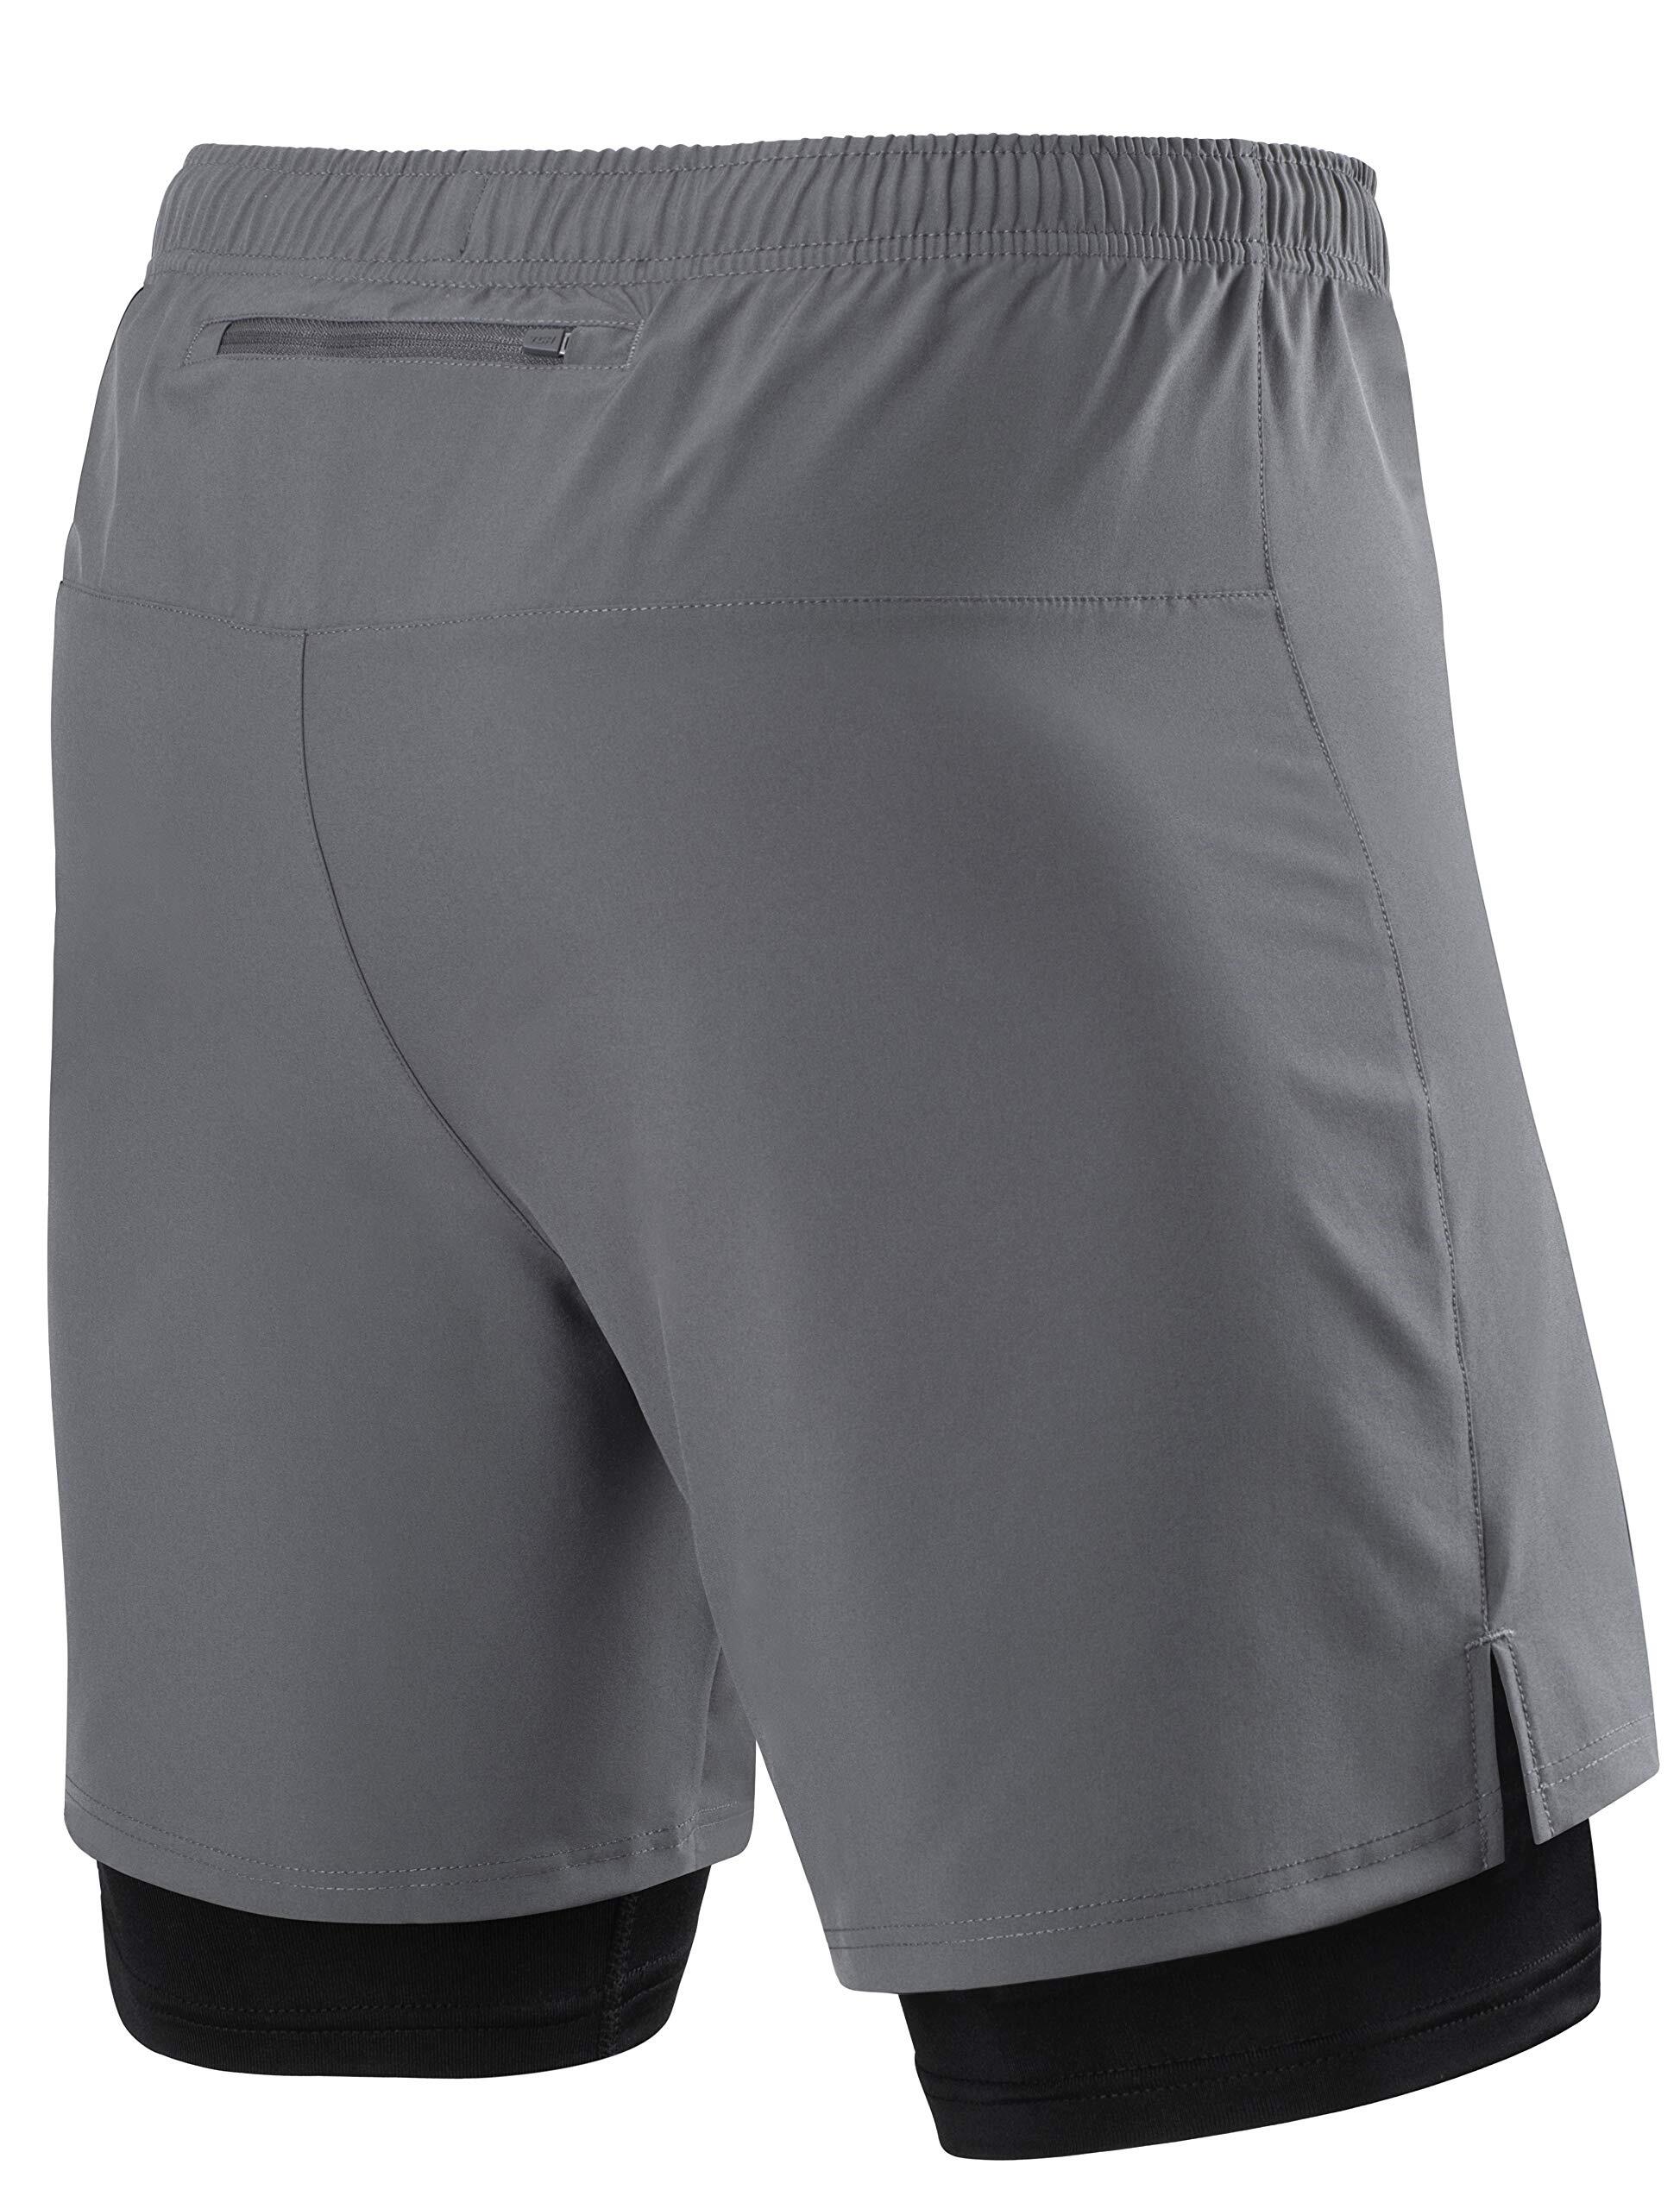 Men's Ultra 2-in-1 Running Shorts with Key Pocket - Asphalt 2/5